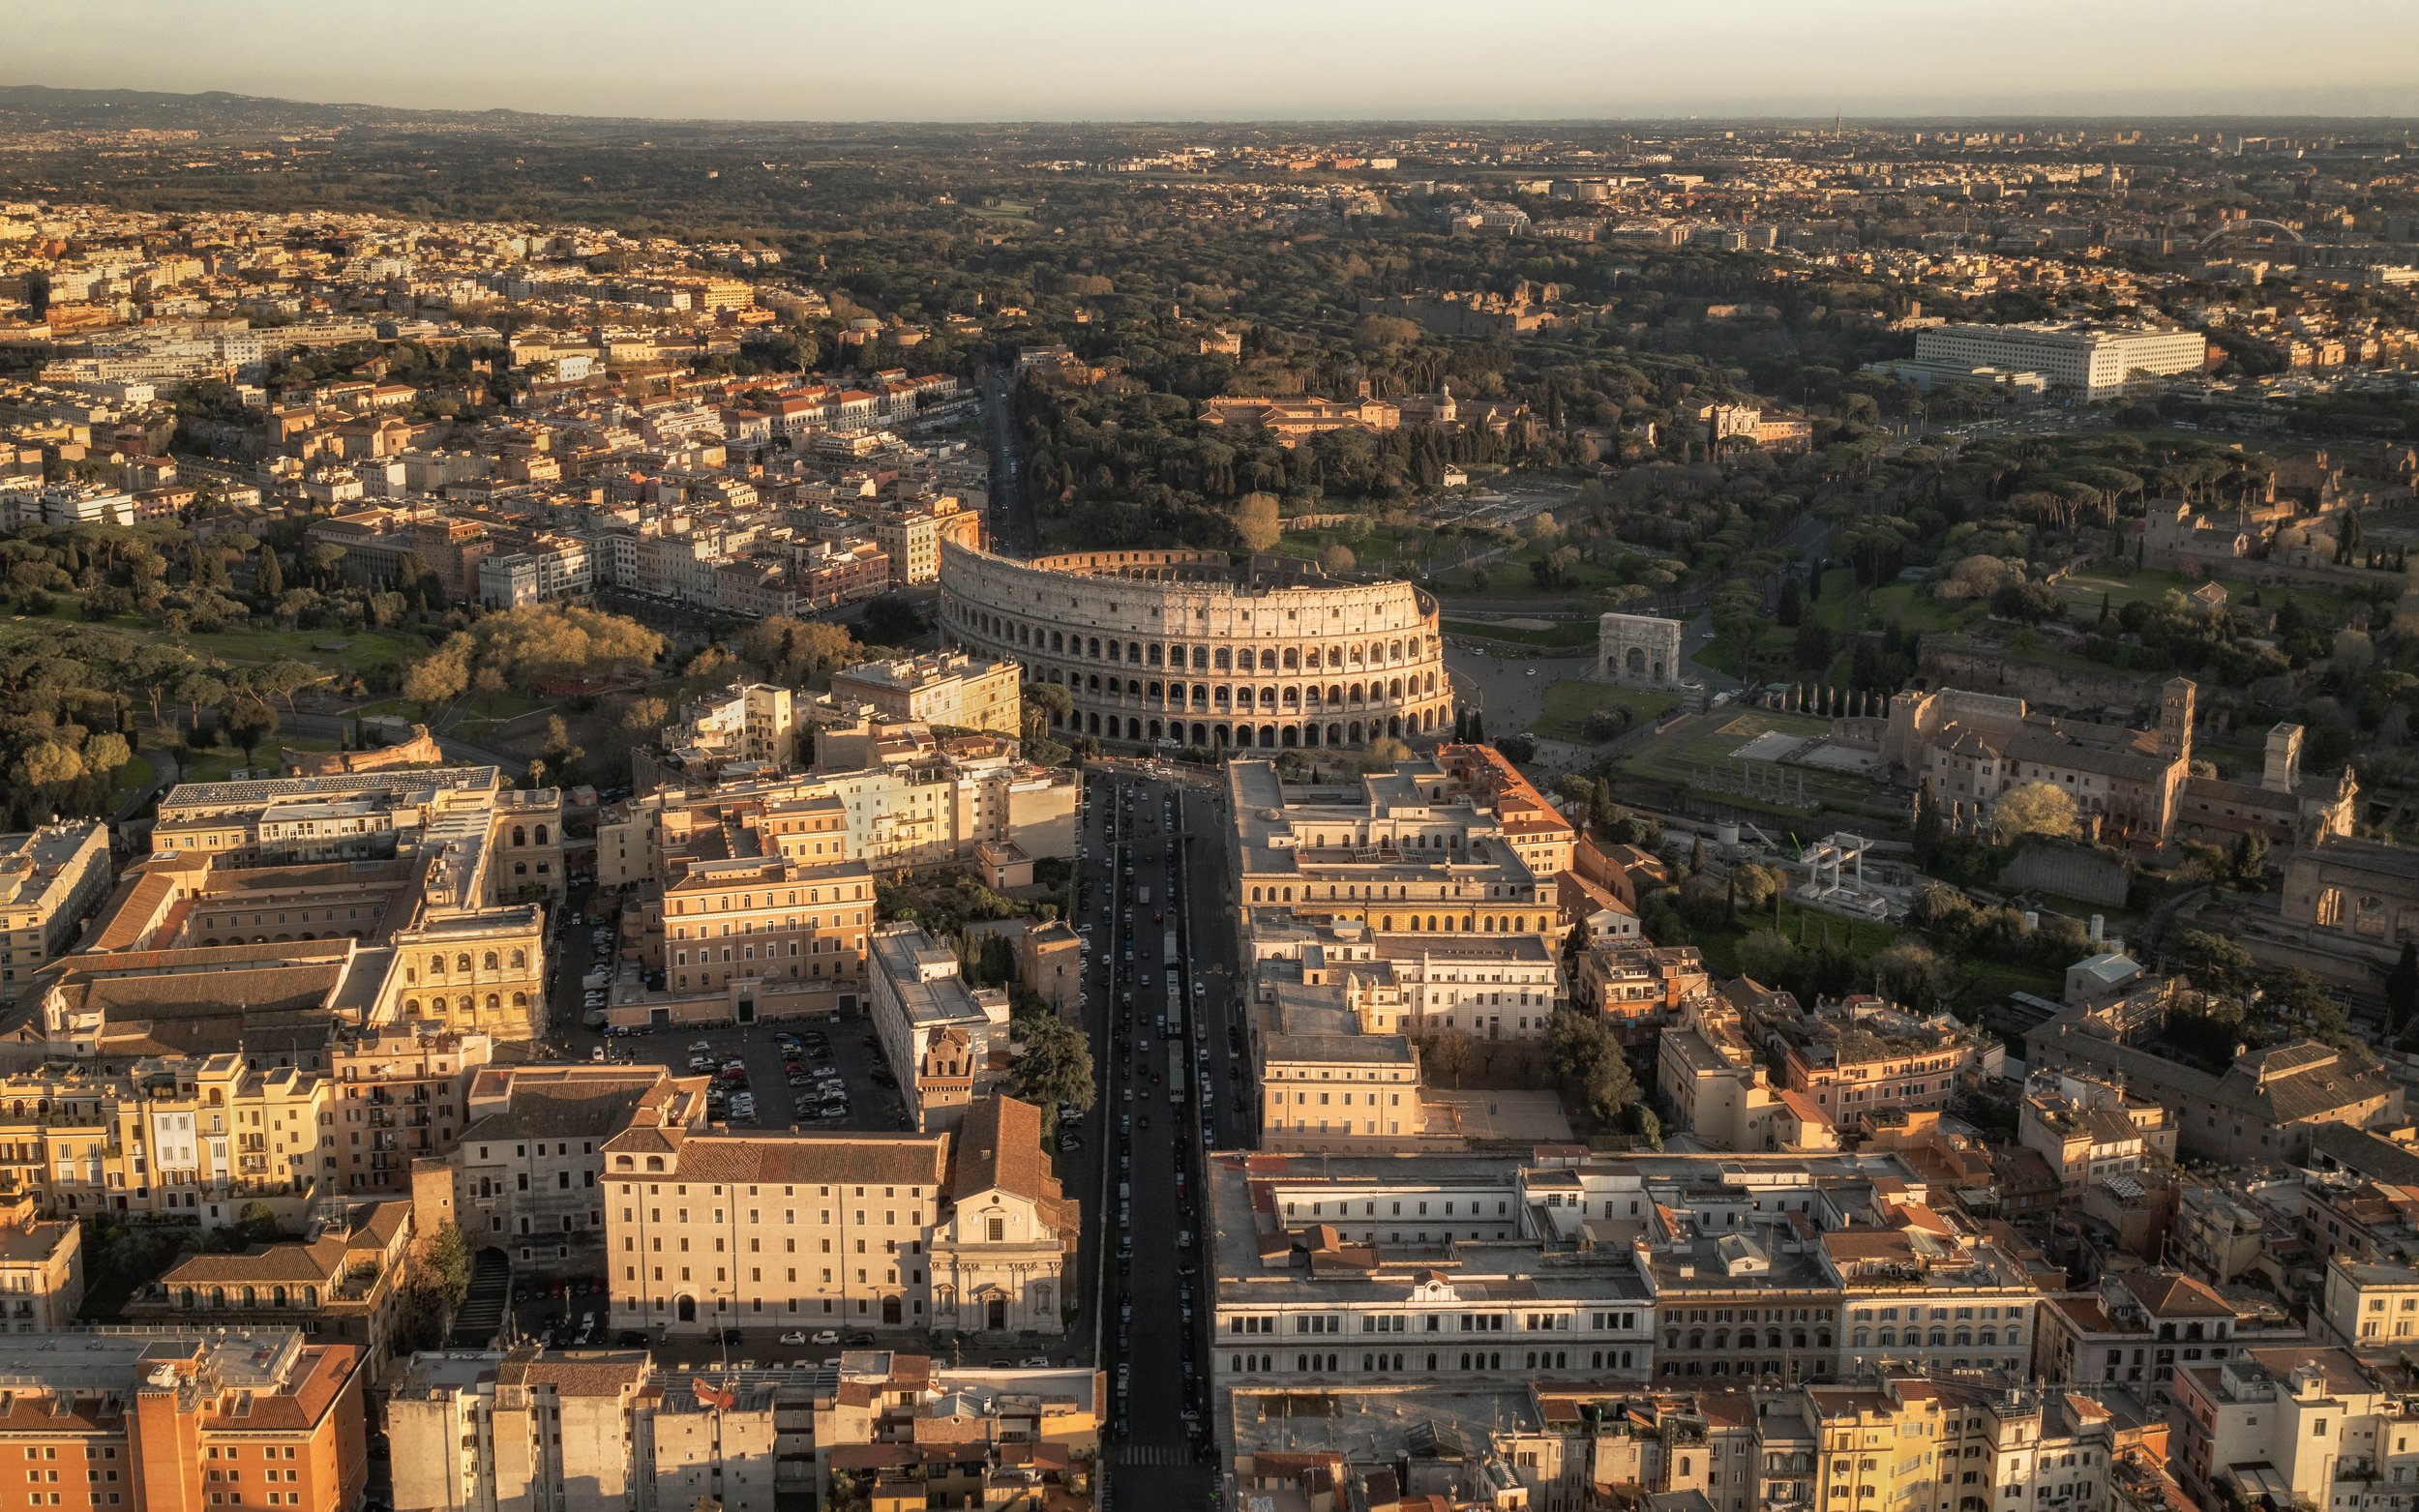 Overzichtsfoto van het Colosseum in Rome